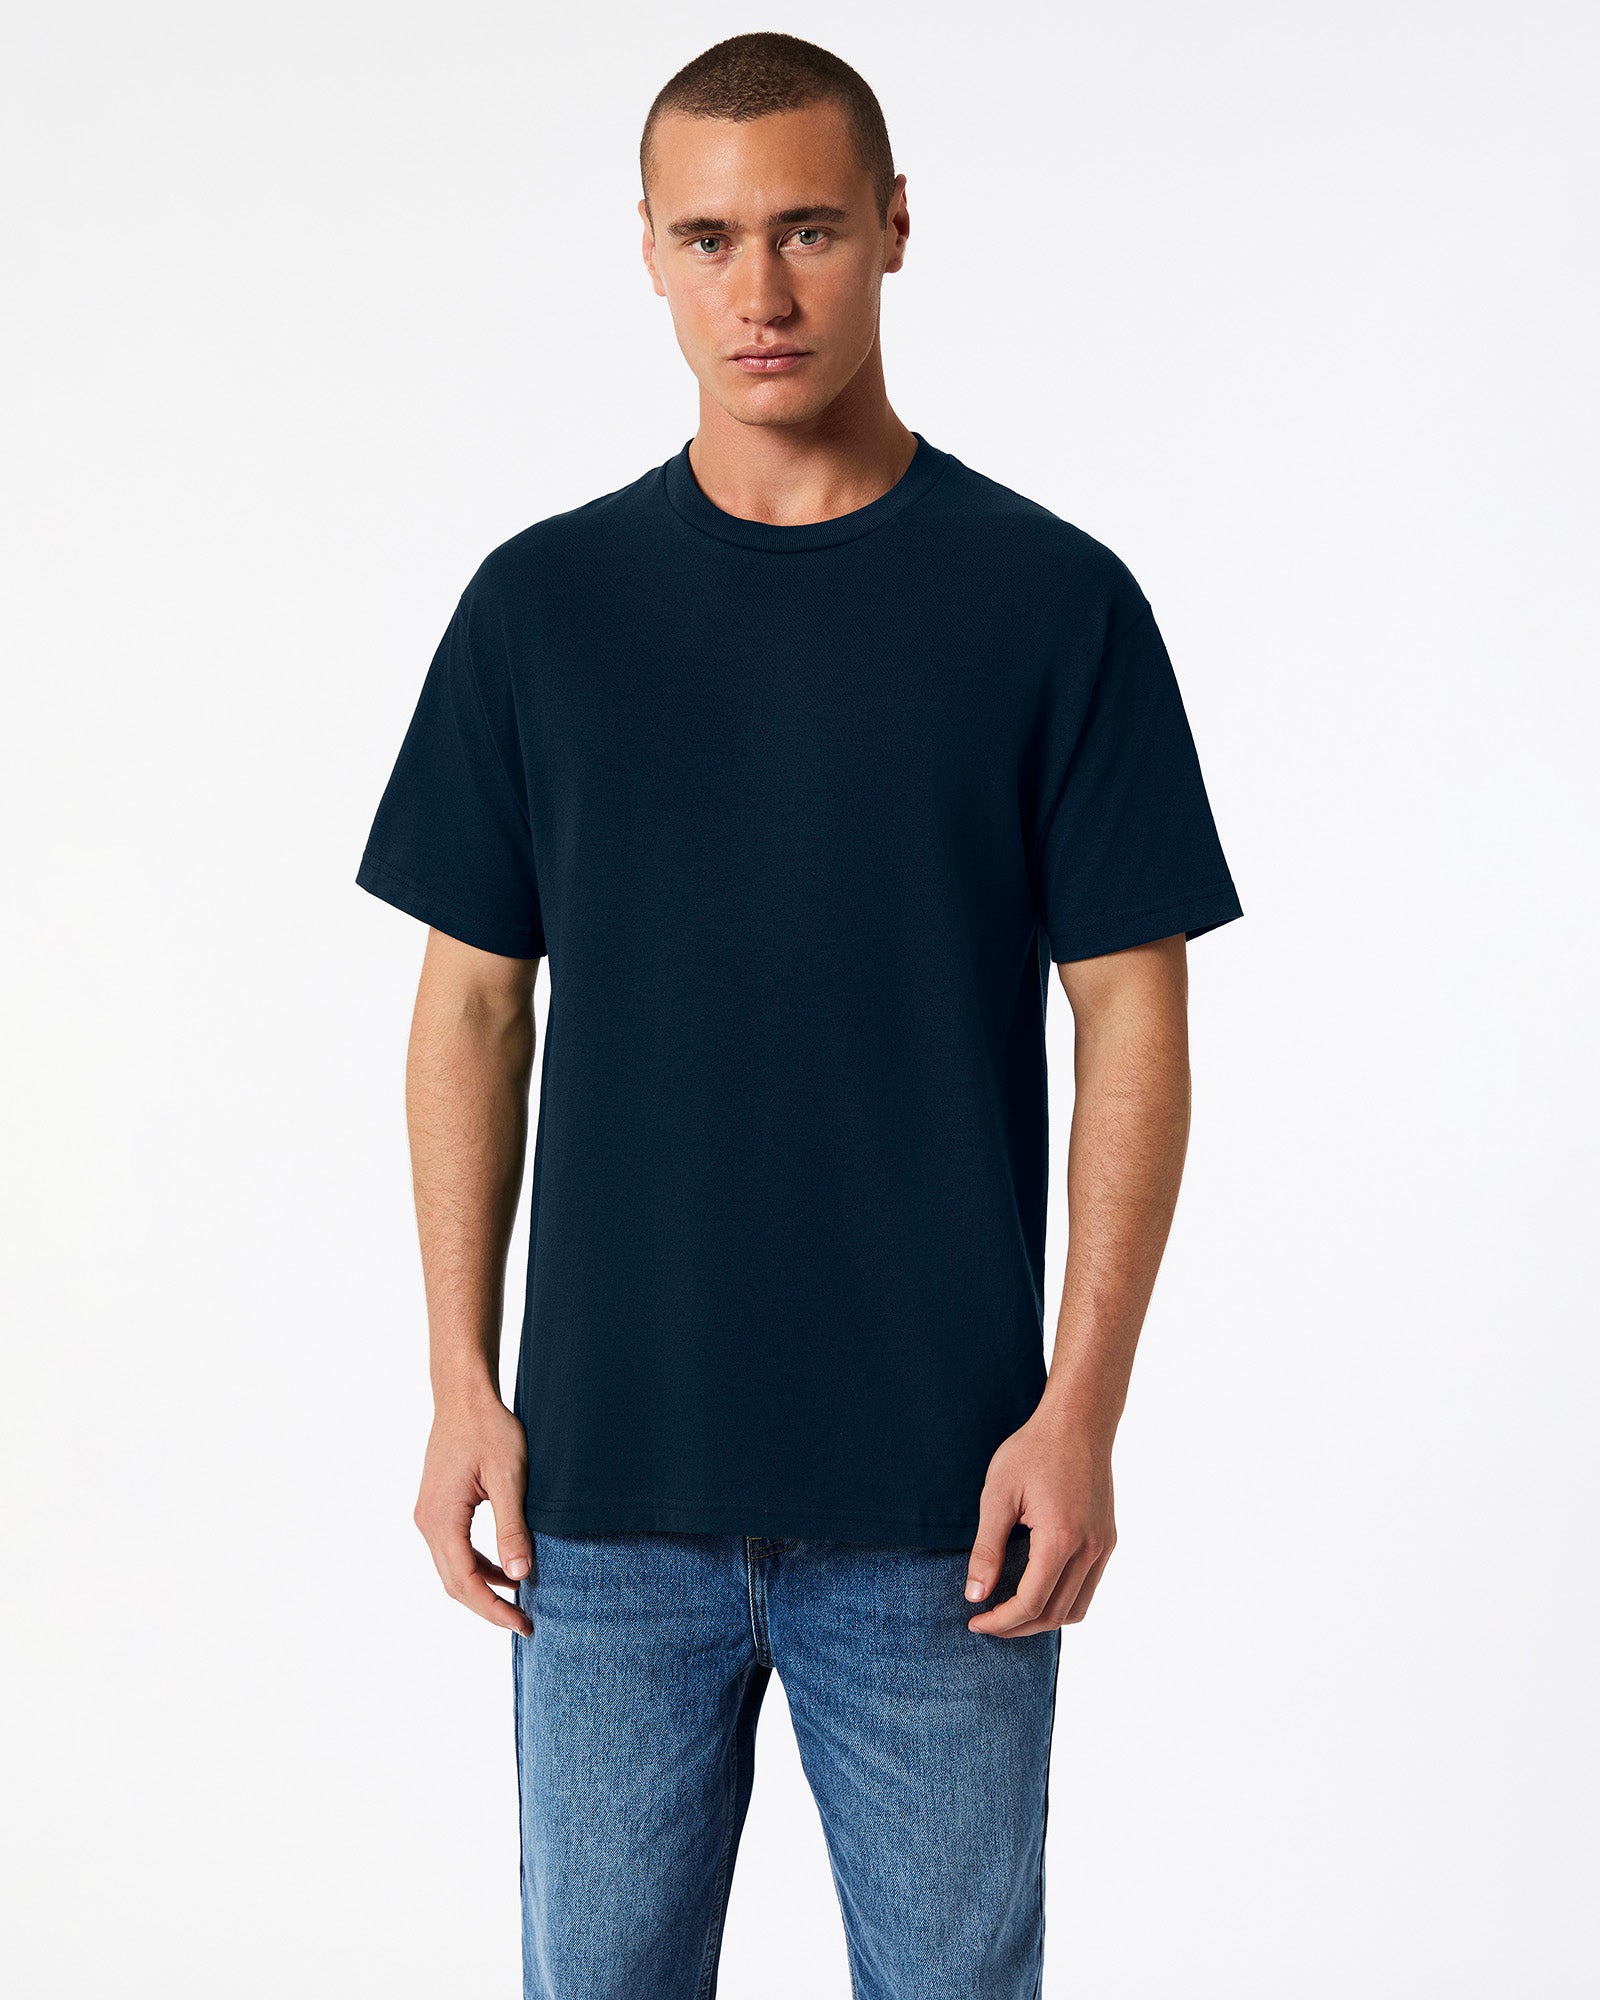 Heavyweight Unisex T-Shirt - True Navy